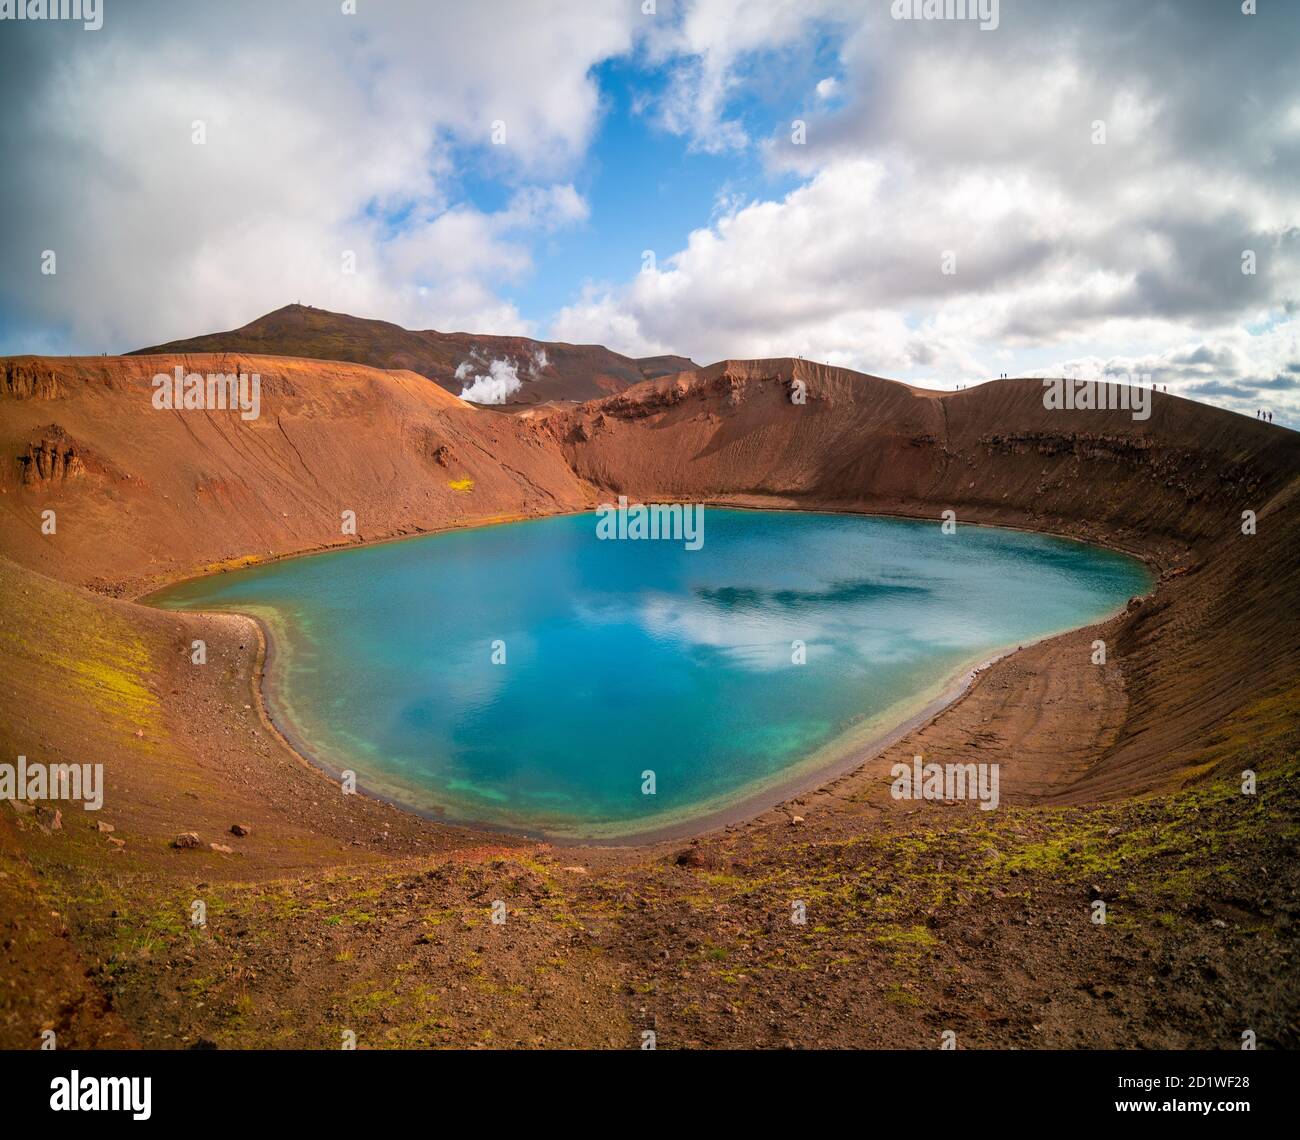 Cratère volcanique rempli d'eau Islande Banque D'Images